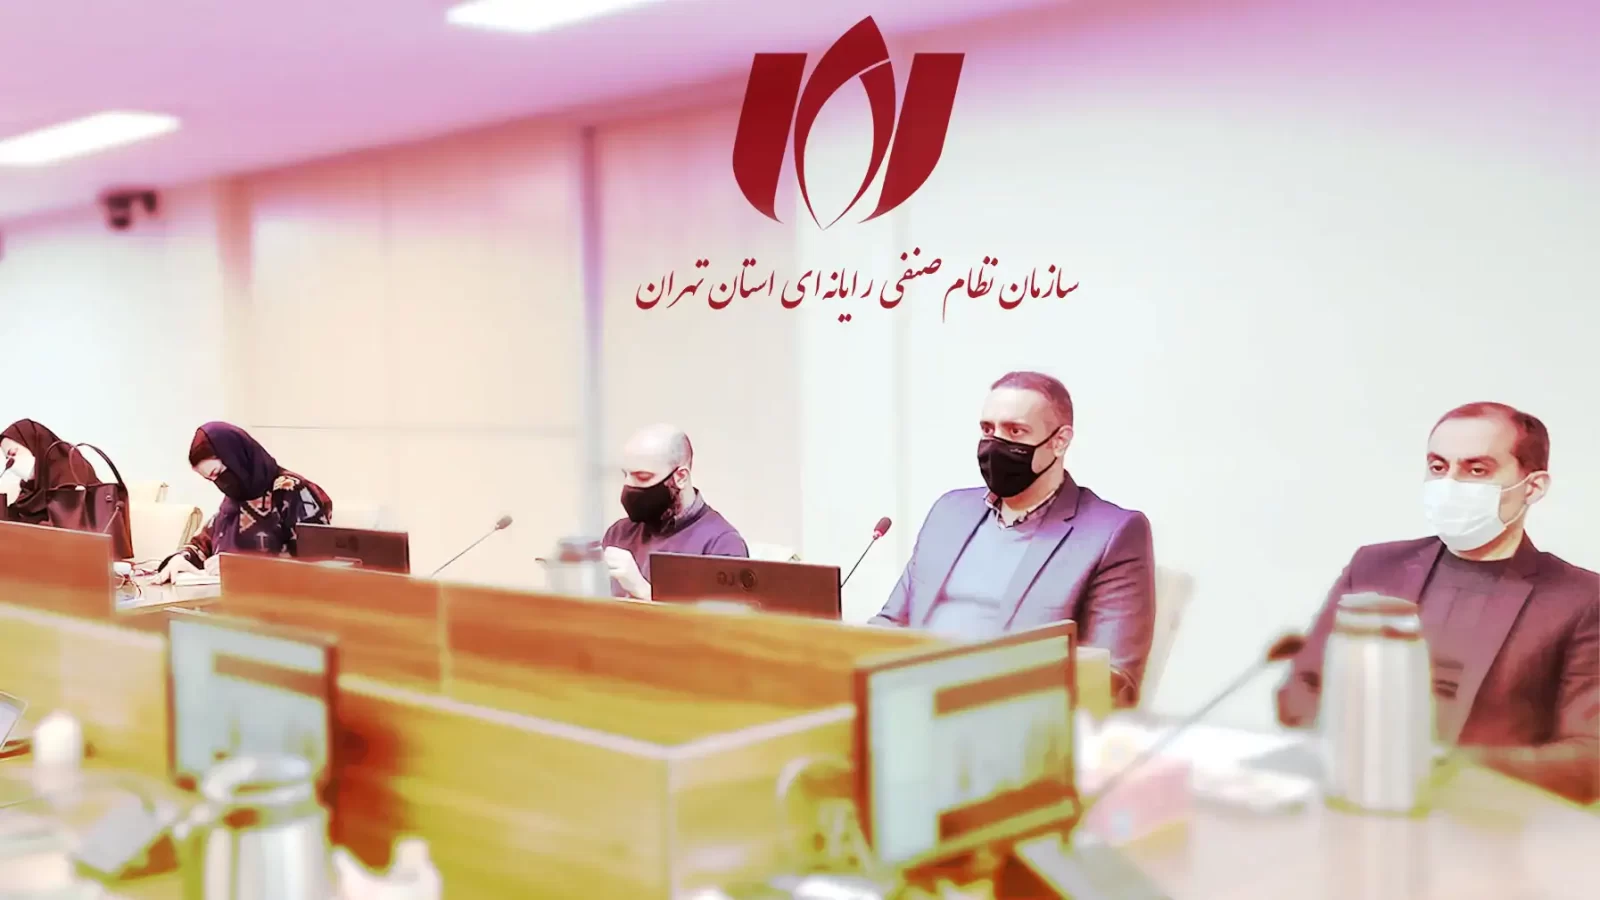 نشست خبری دی ماه سازمان نصر تهران